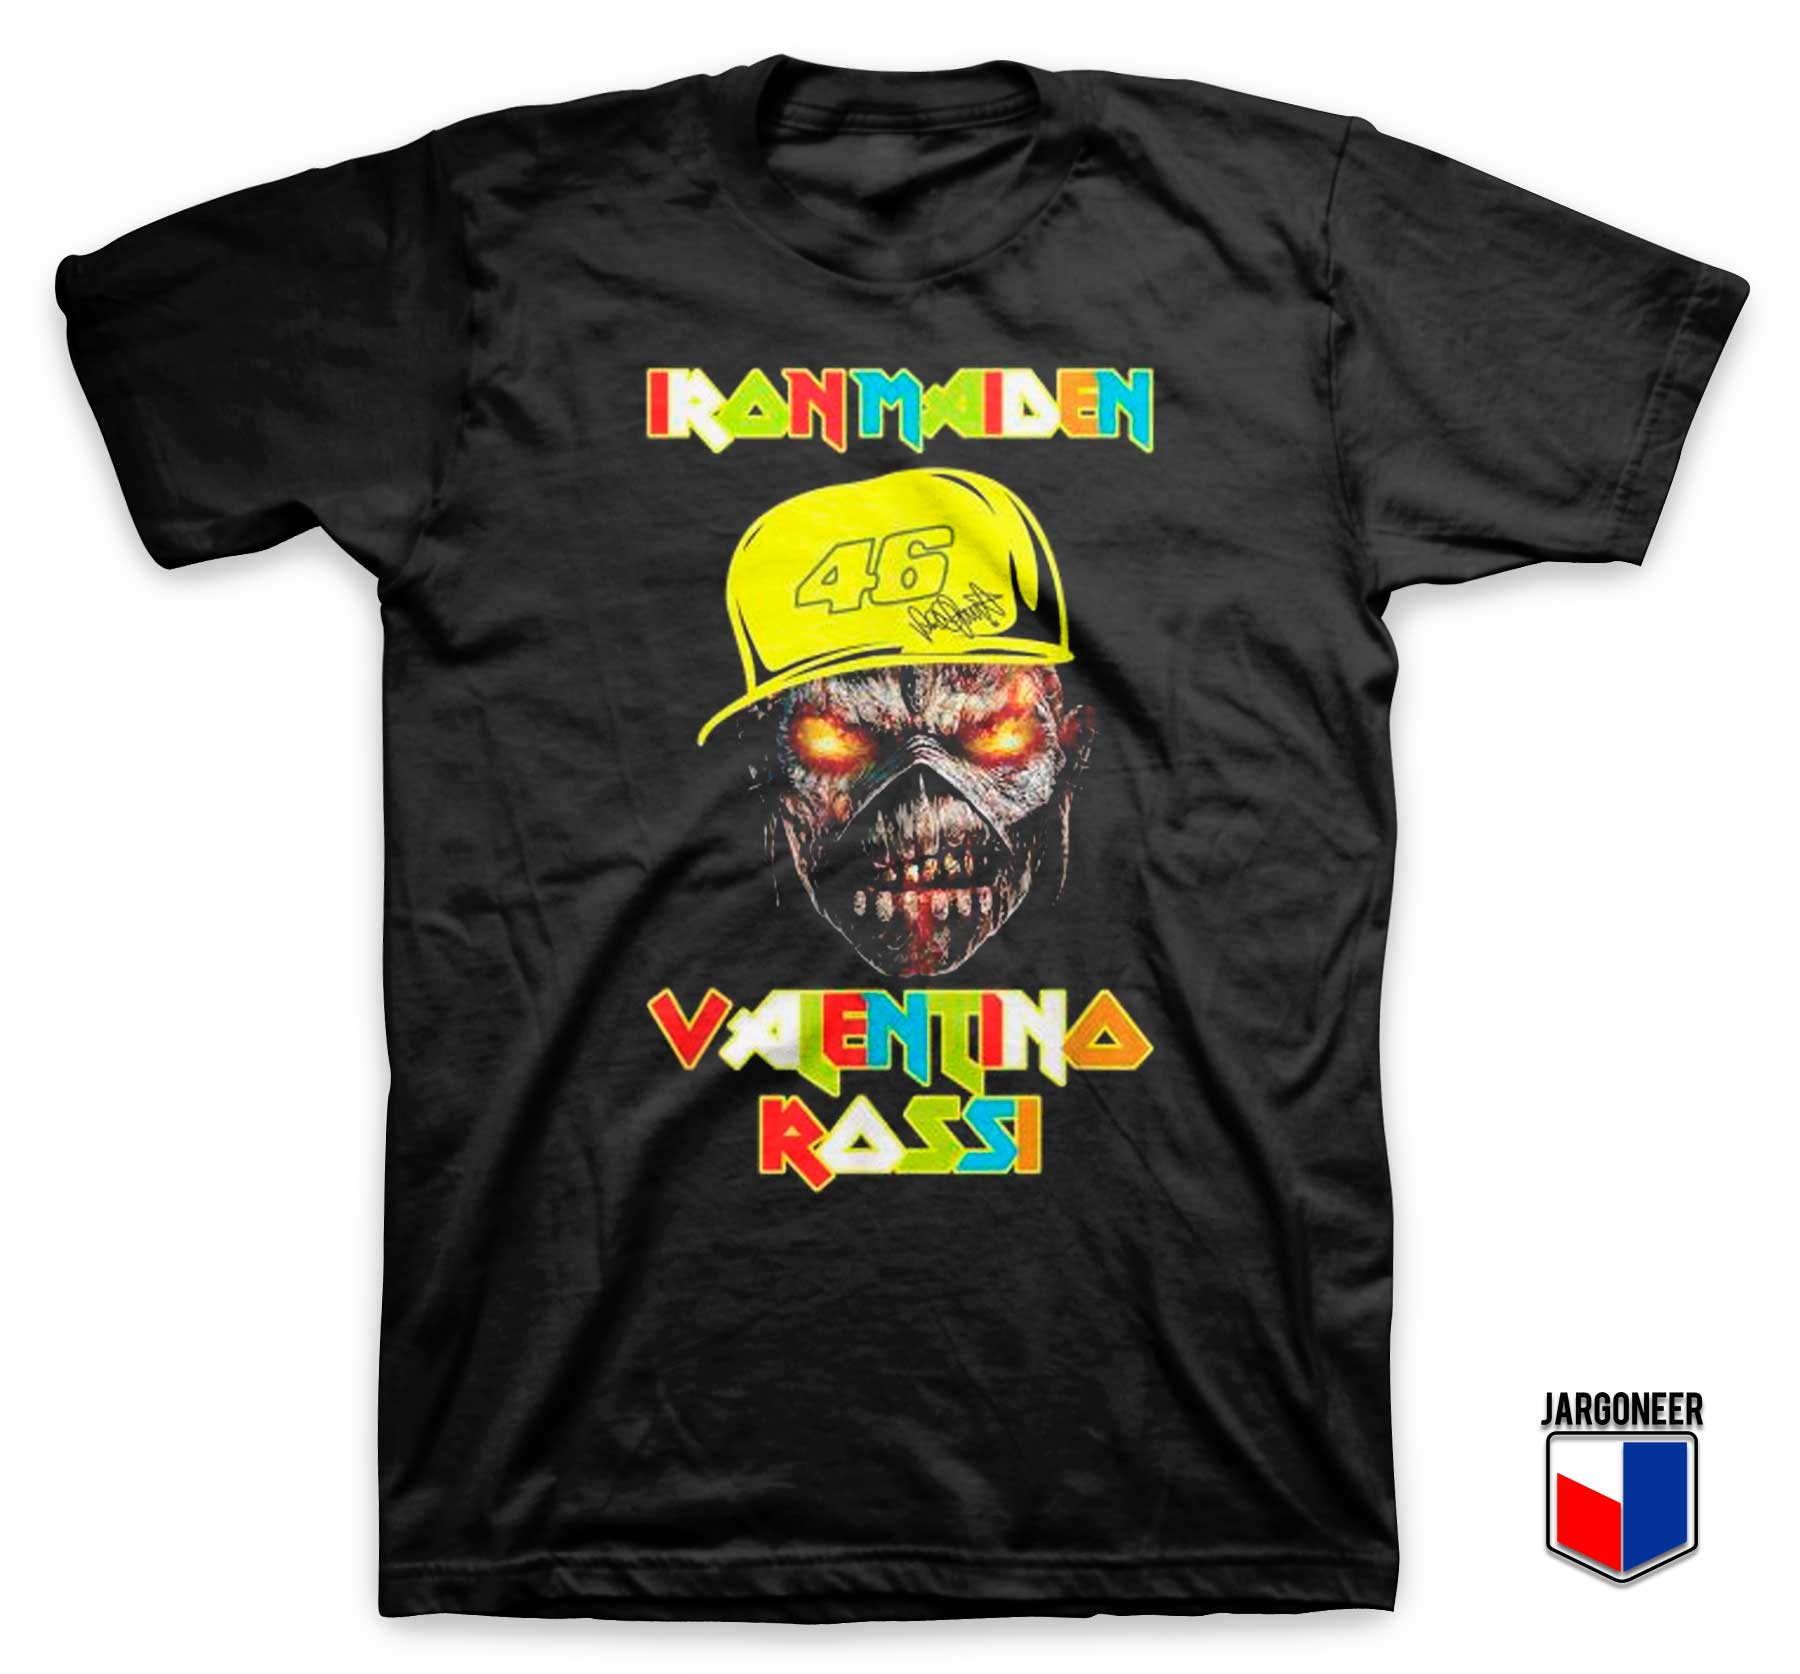 Vintage Iron Maiden VR46 T Shirt - Shop Unique Graphic Cool Shirt Designs